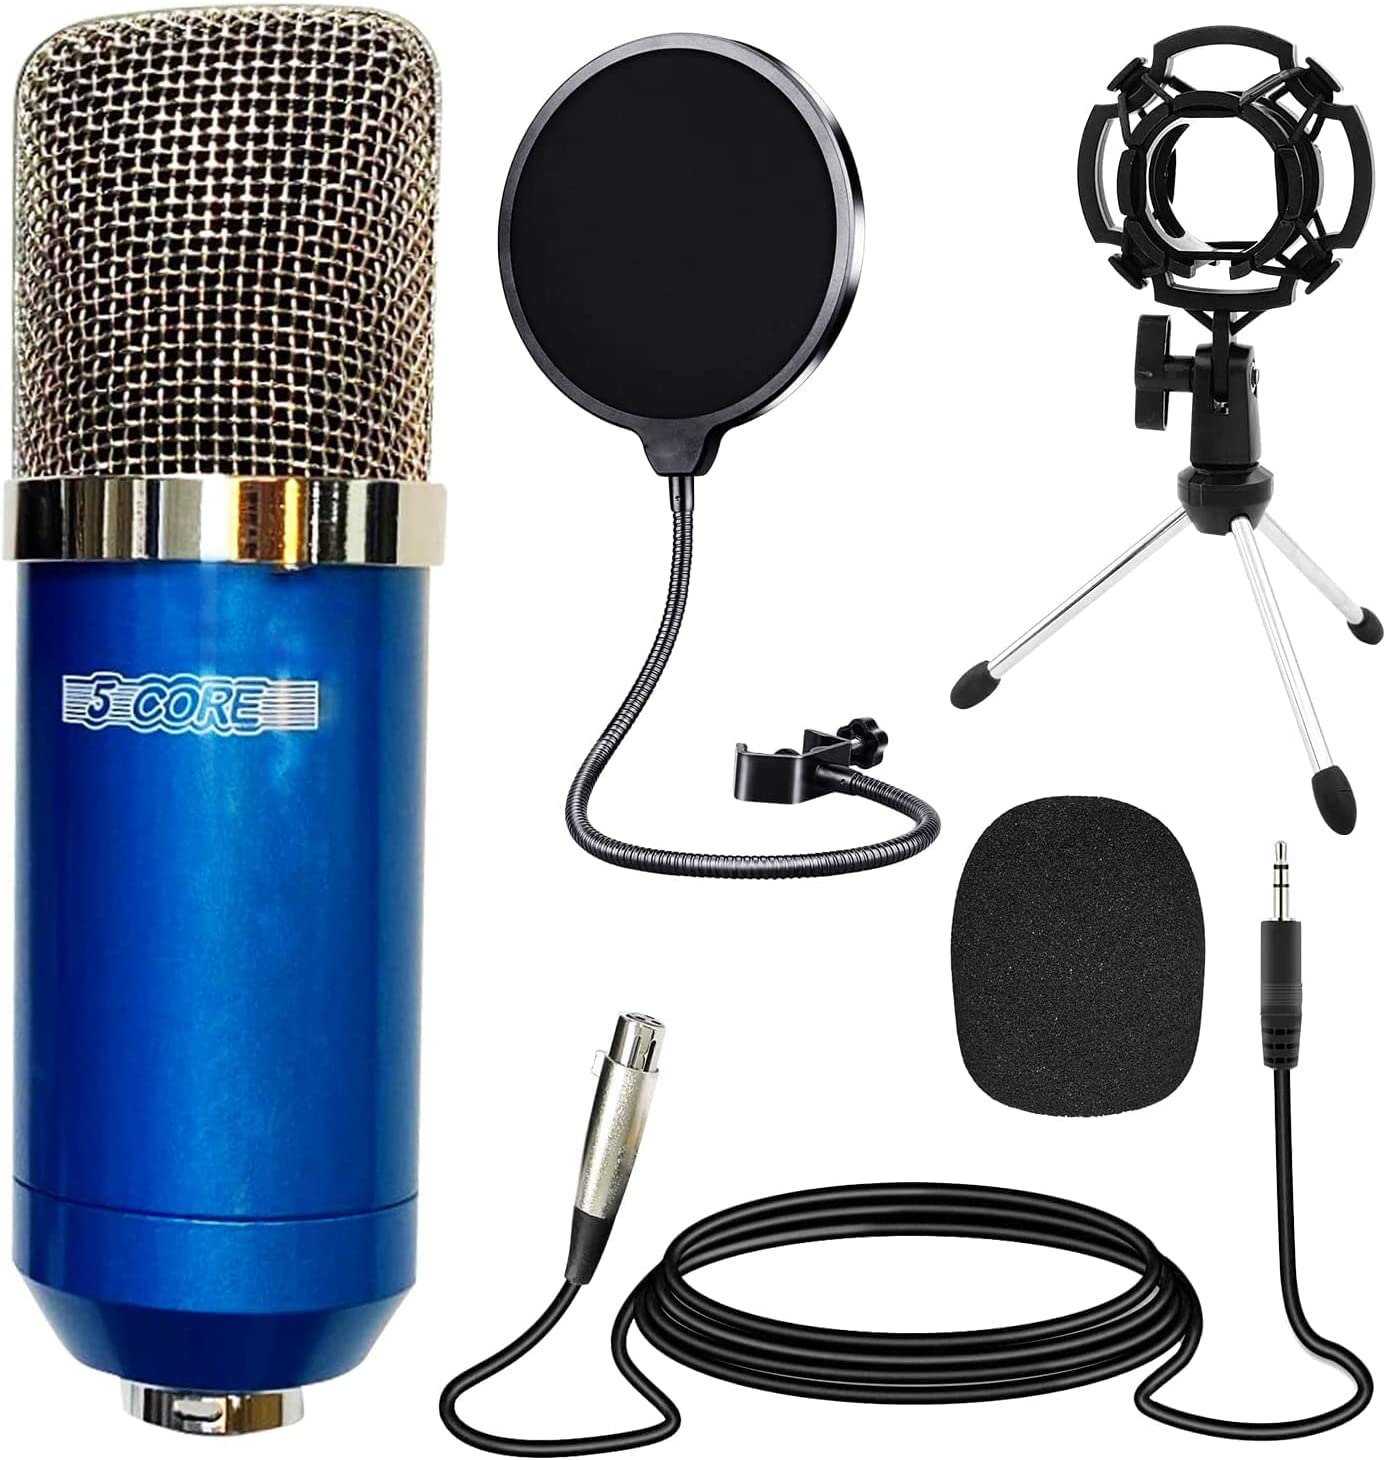 5 Core Studio Recording Kit Blue Include Recording Mic Desk Arm Shock Mount Sponge XLR Cable Mini Tripod